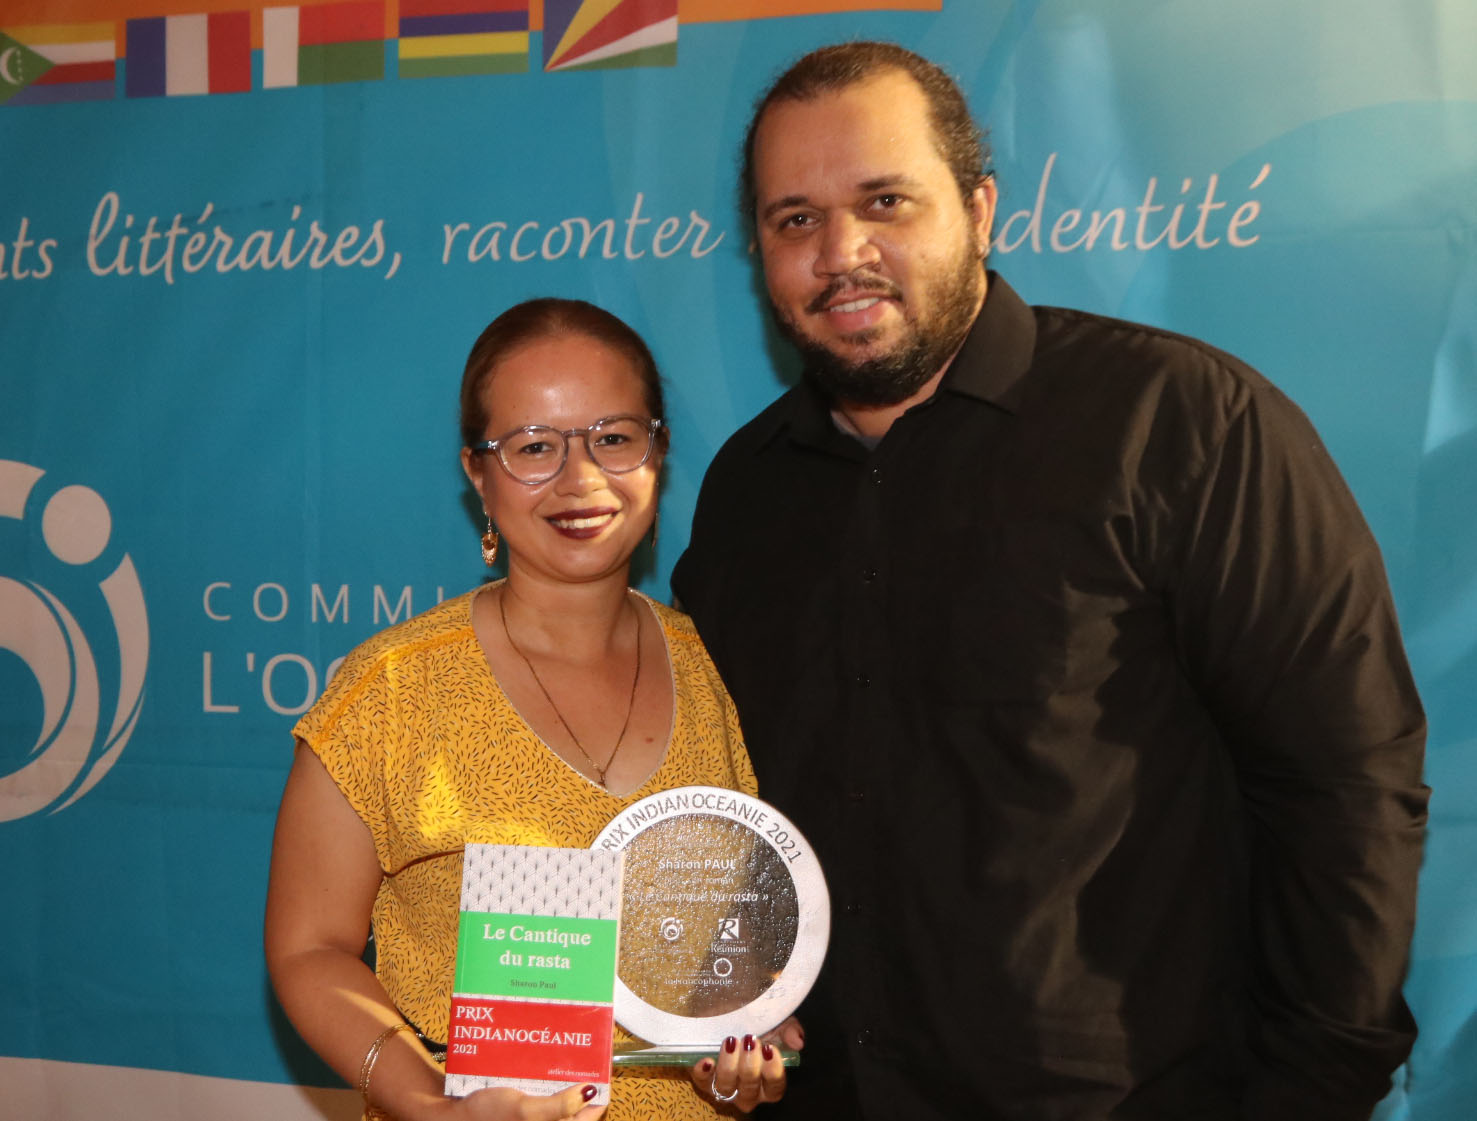 Prix Indianocéanie 2021: Sharonne Paul reçoit le trophée pour son roman Le Cantique du rasta